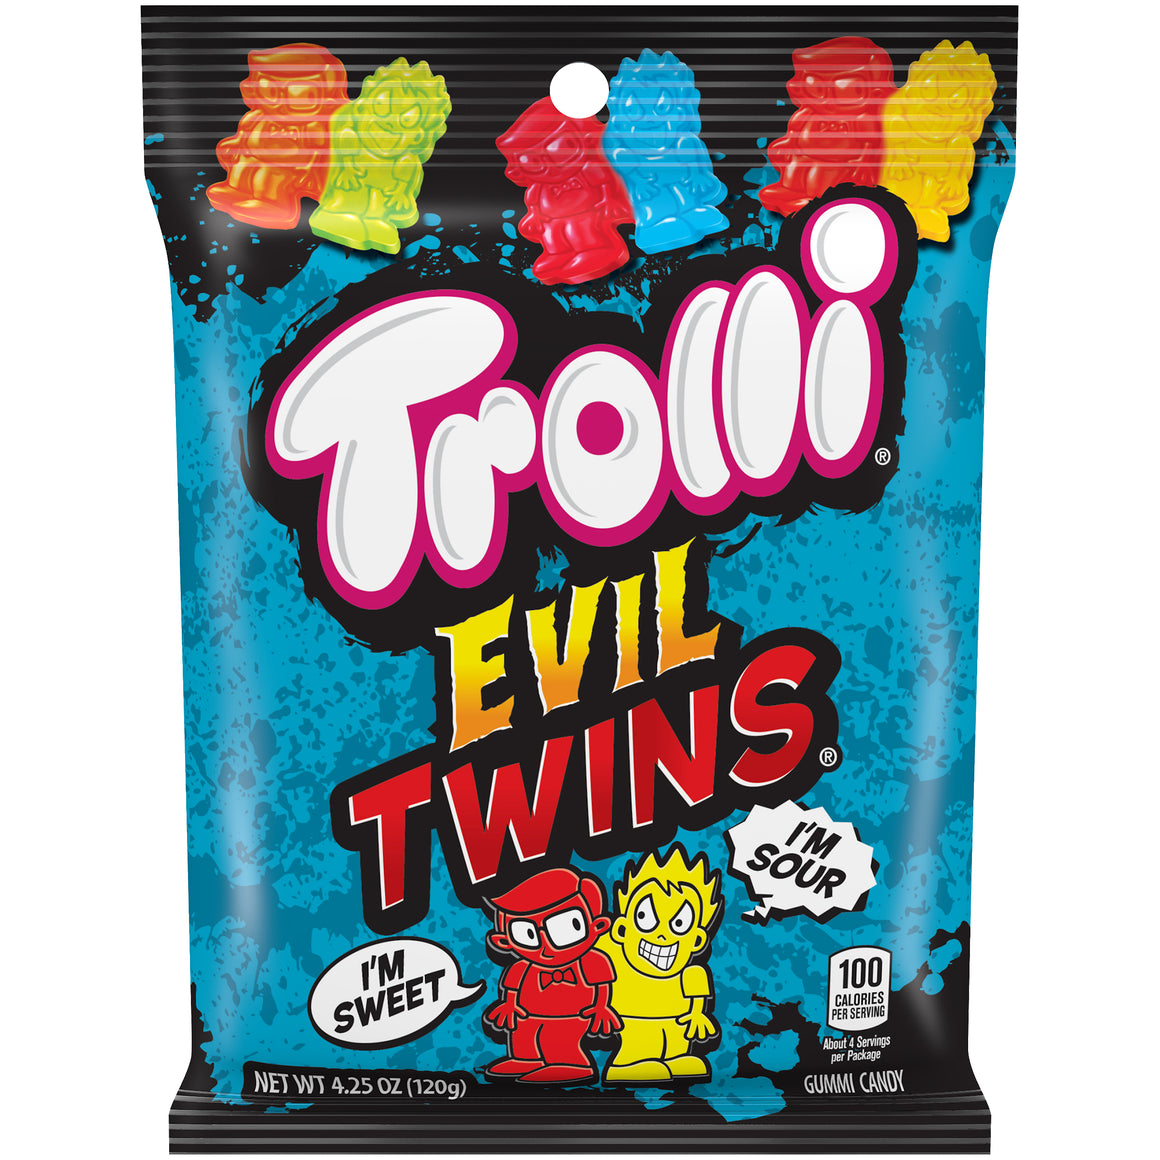 All City Candy Trolli Evil Twins Gummi Candy - 4.25-oz. Bag Gummi Trolli (Ferrara) 1 Bag For fresh candy and great service, visit www.allcitycandy.com